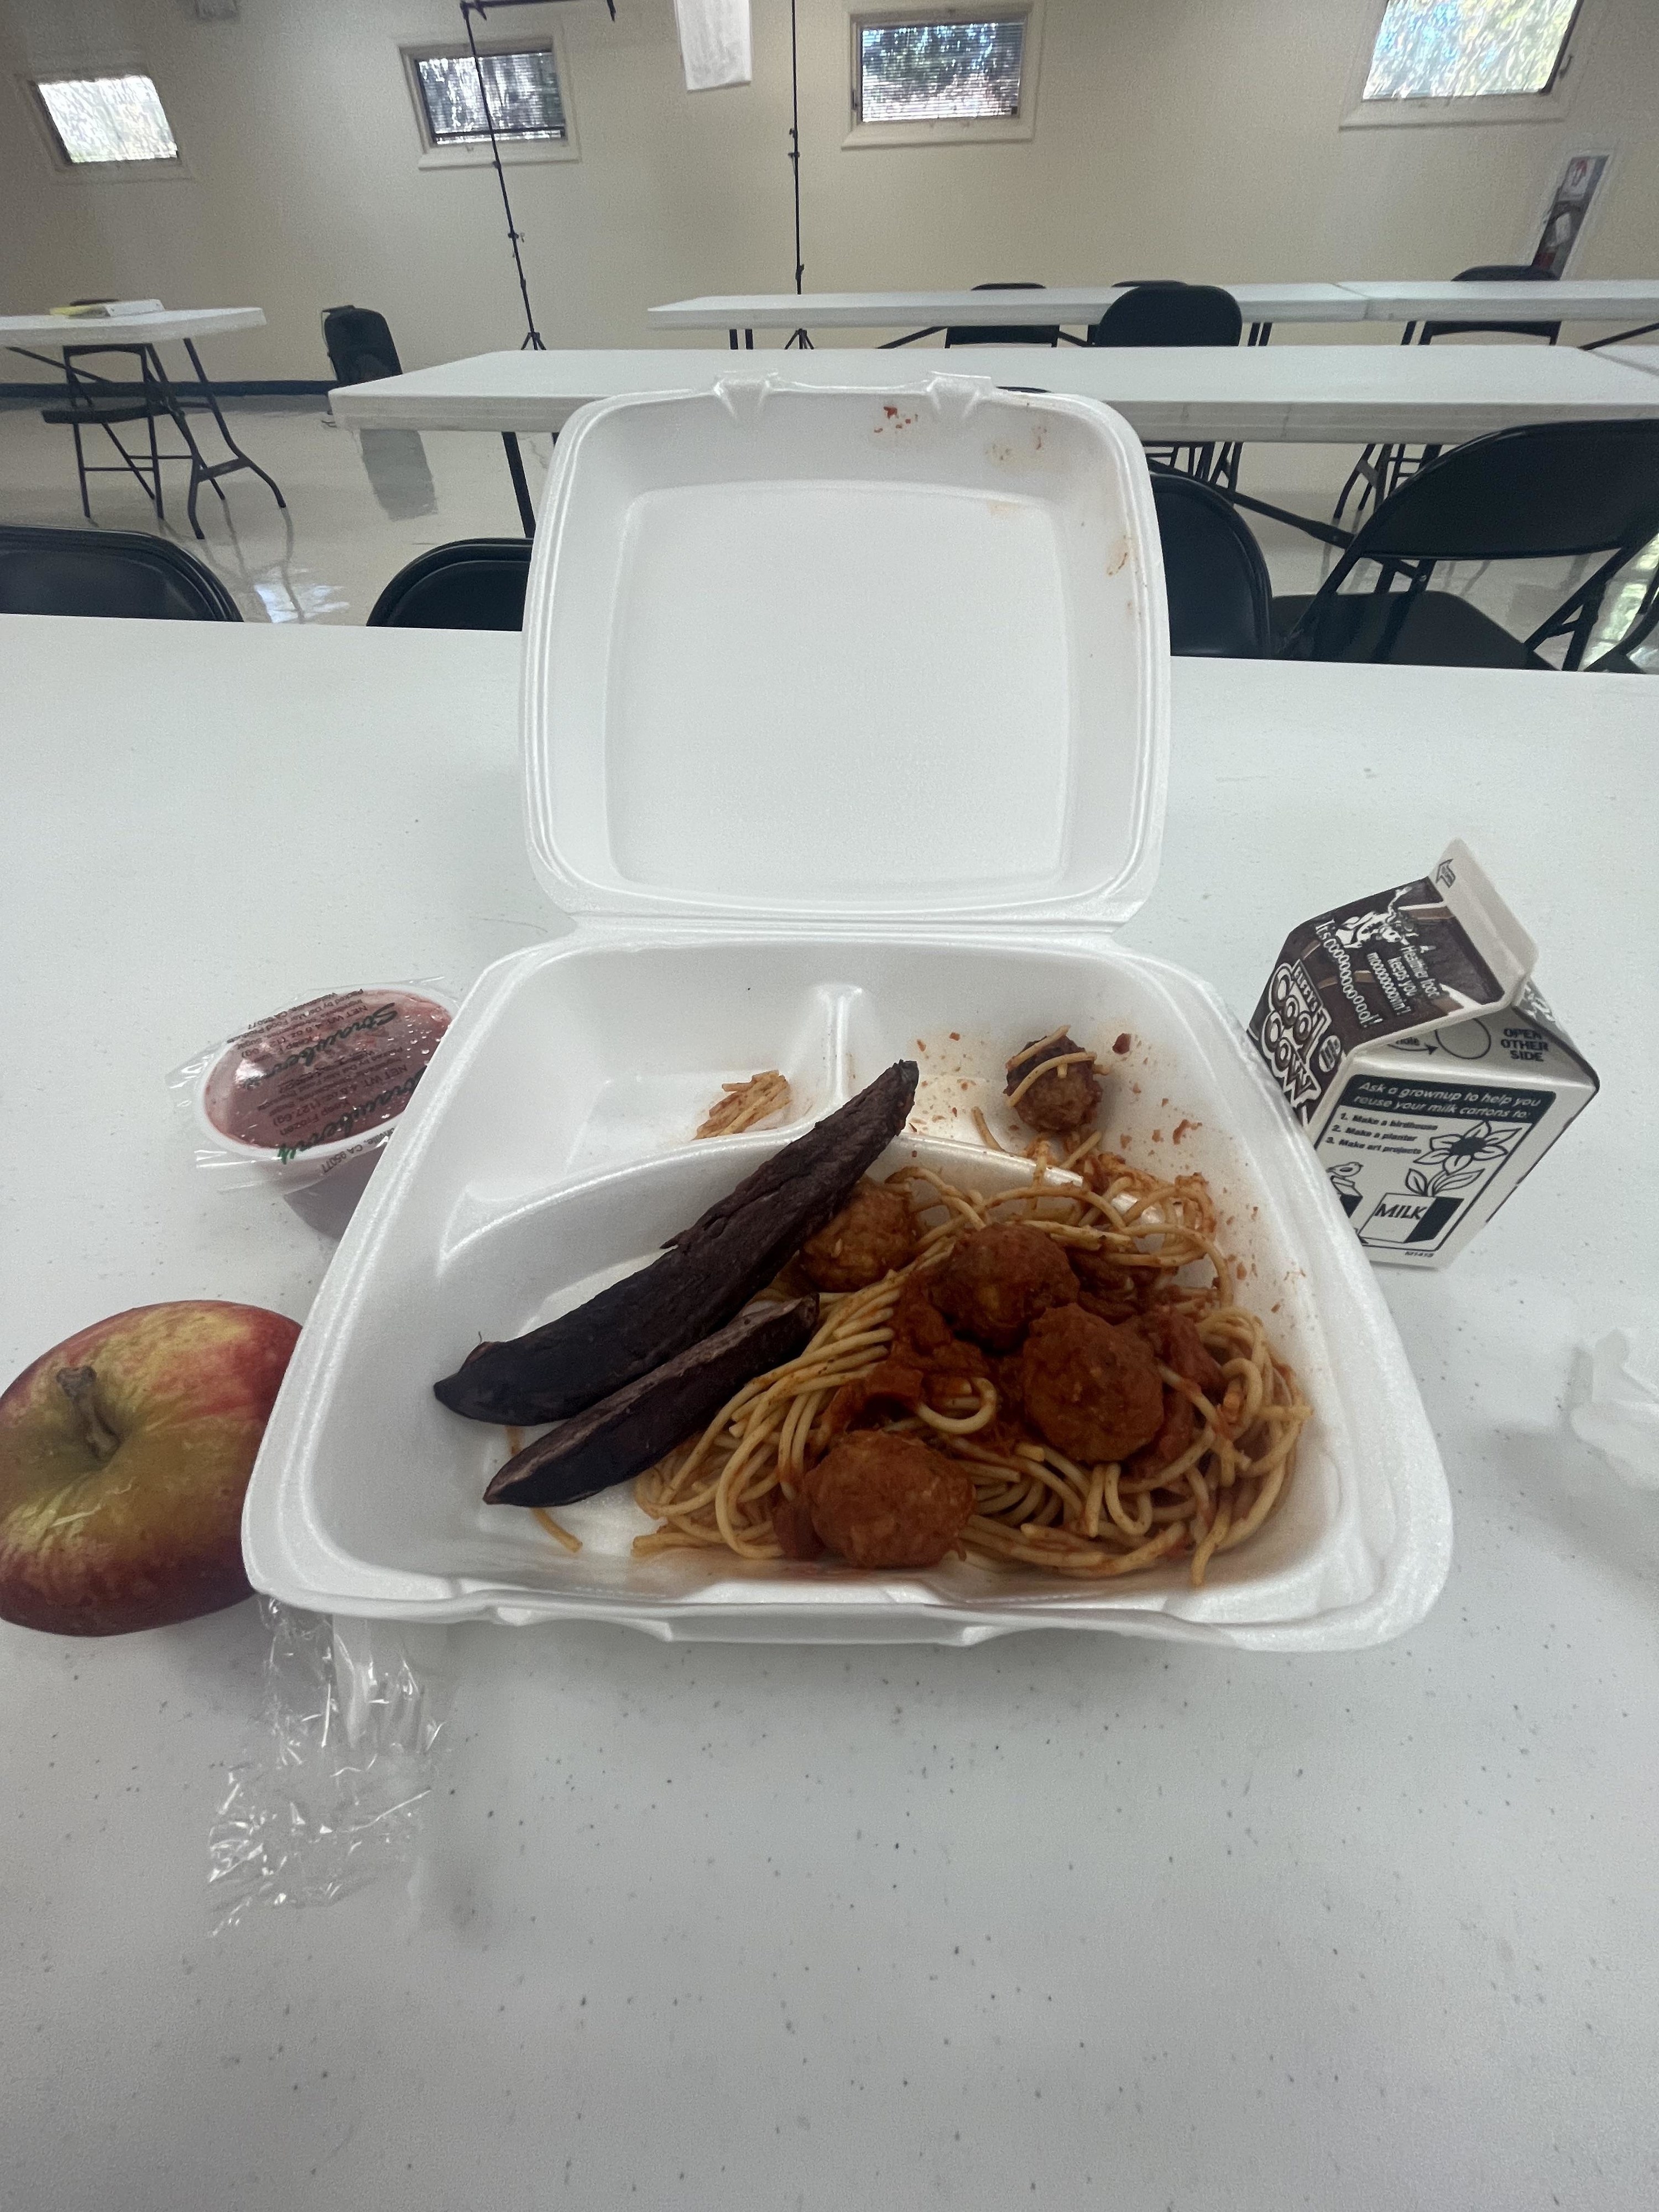 Florida school lunch